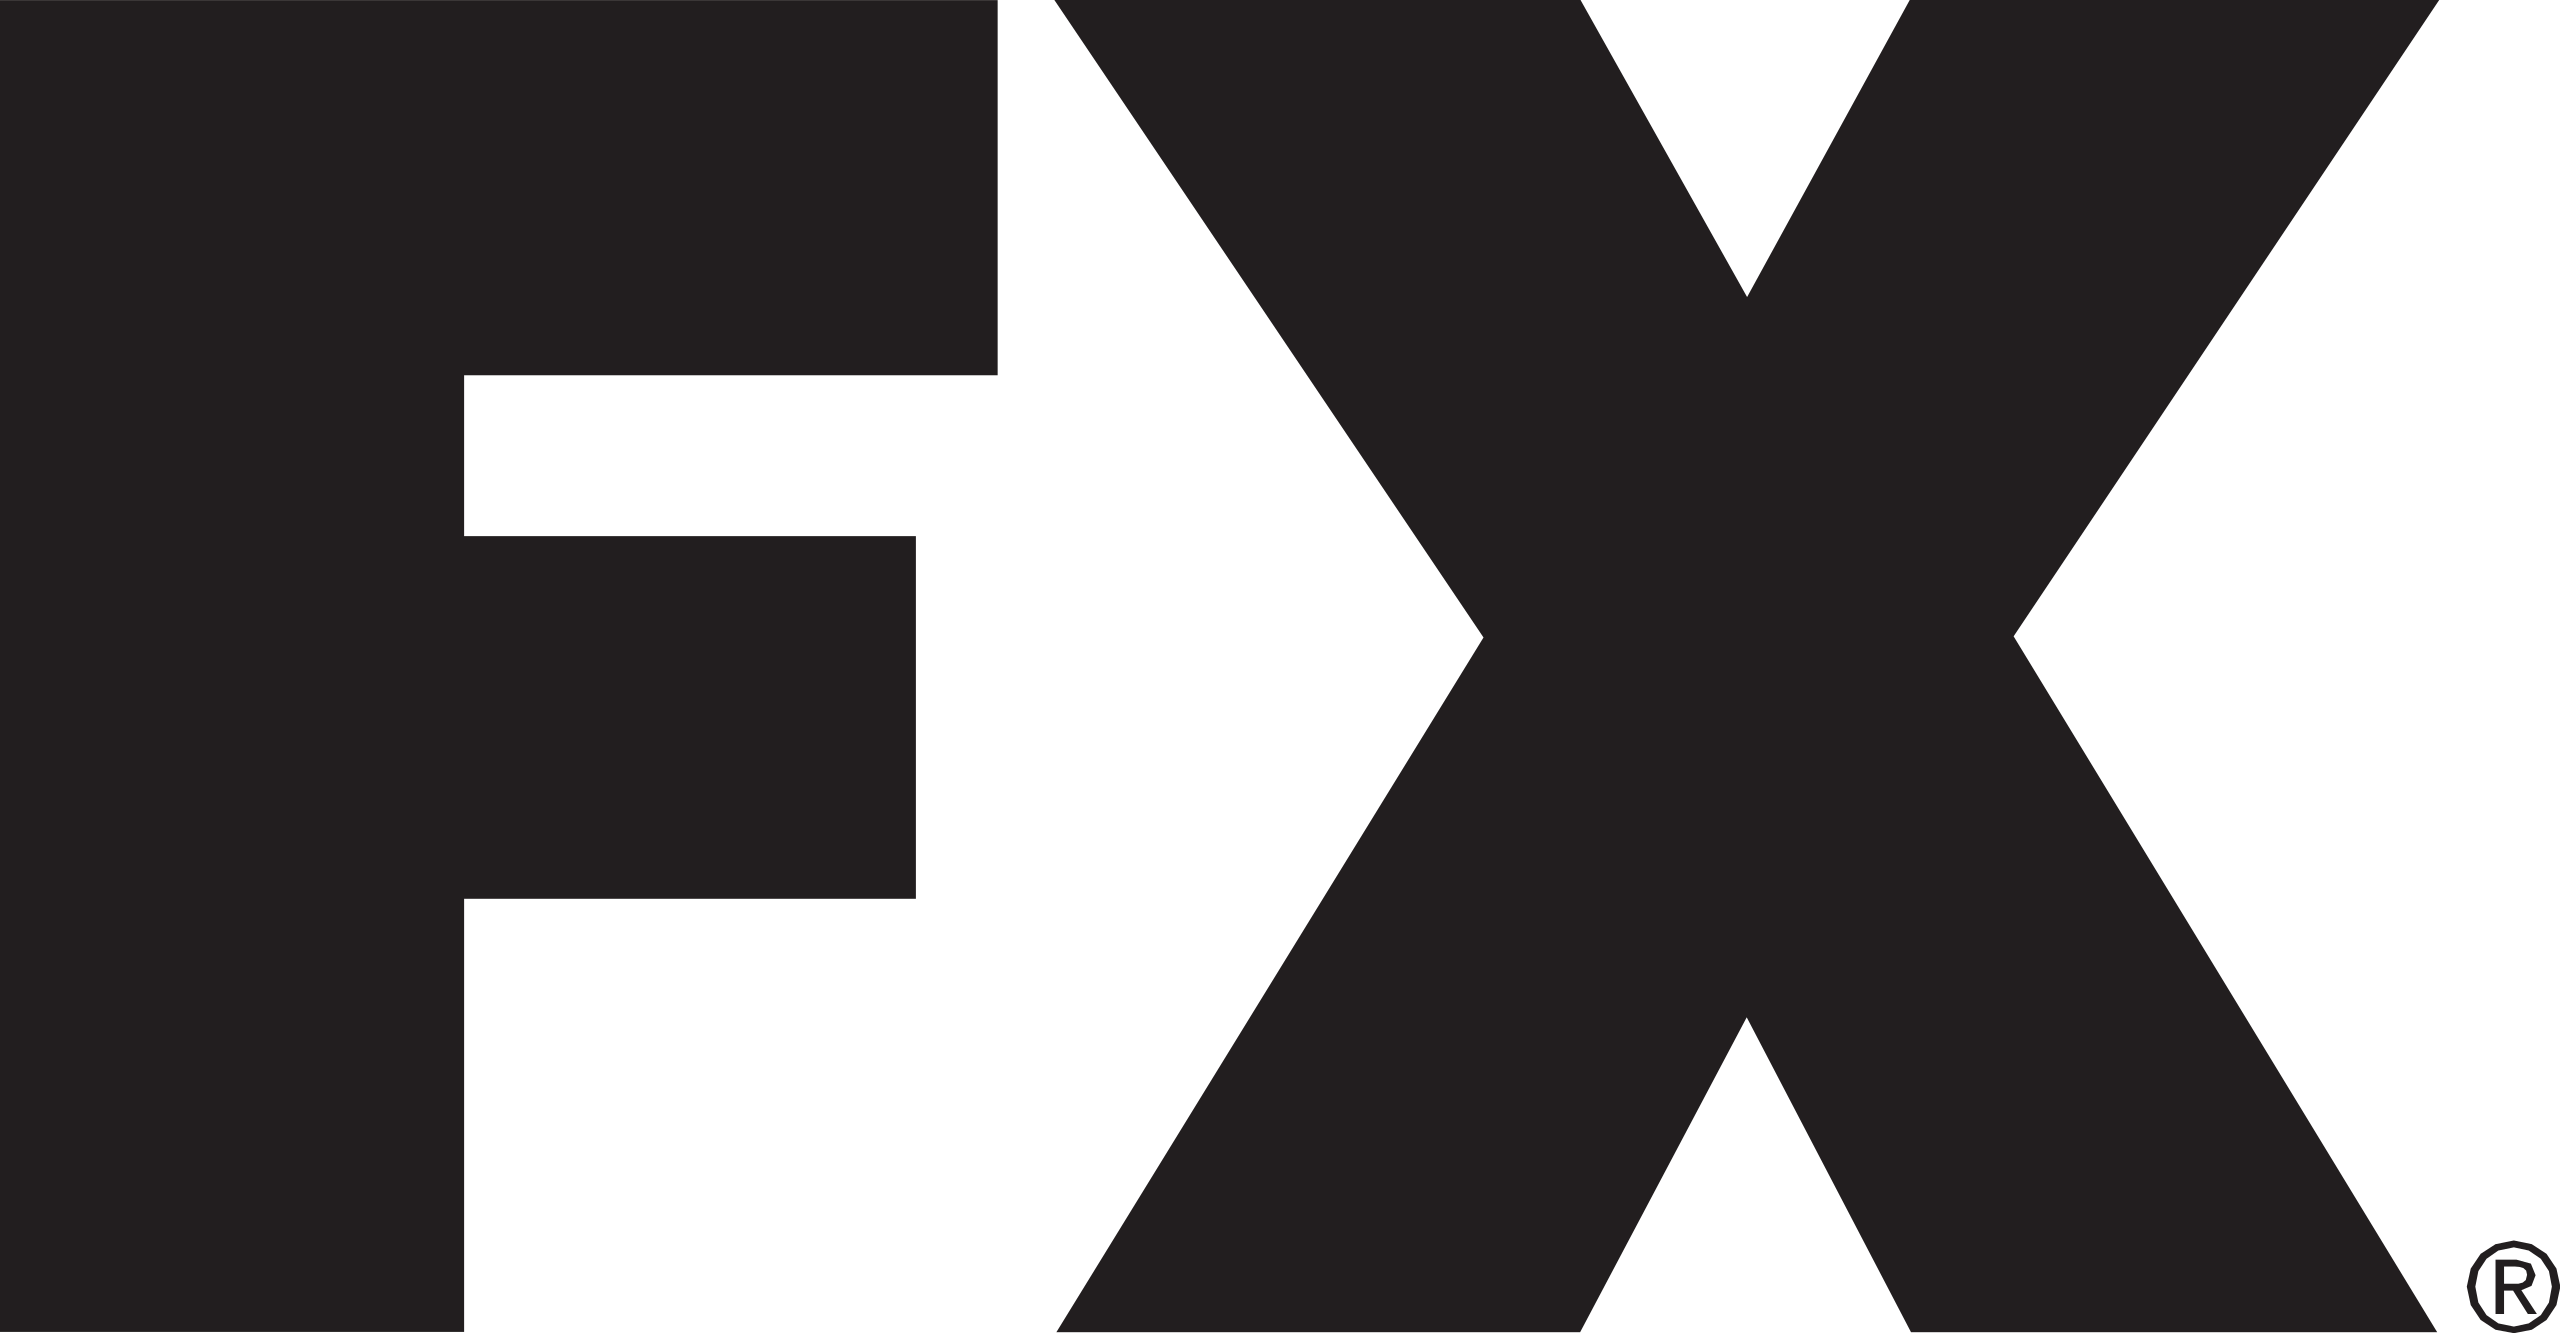 File:FX 2008 logo.svg - Wikipedia